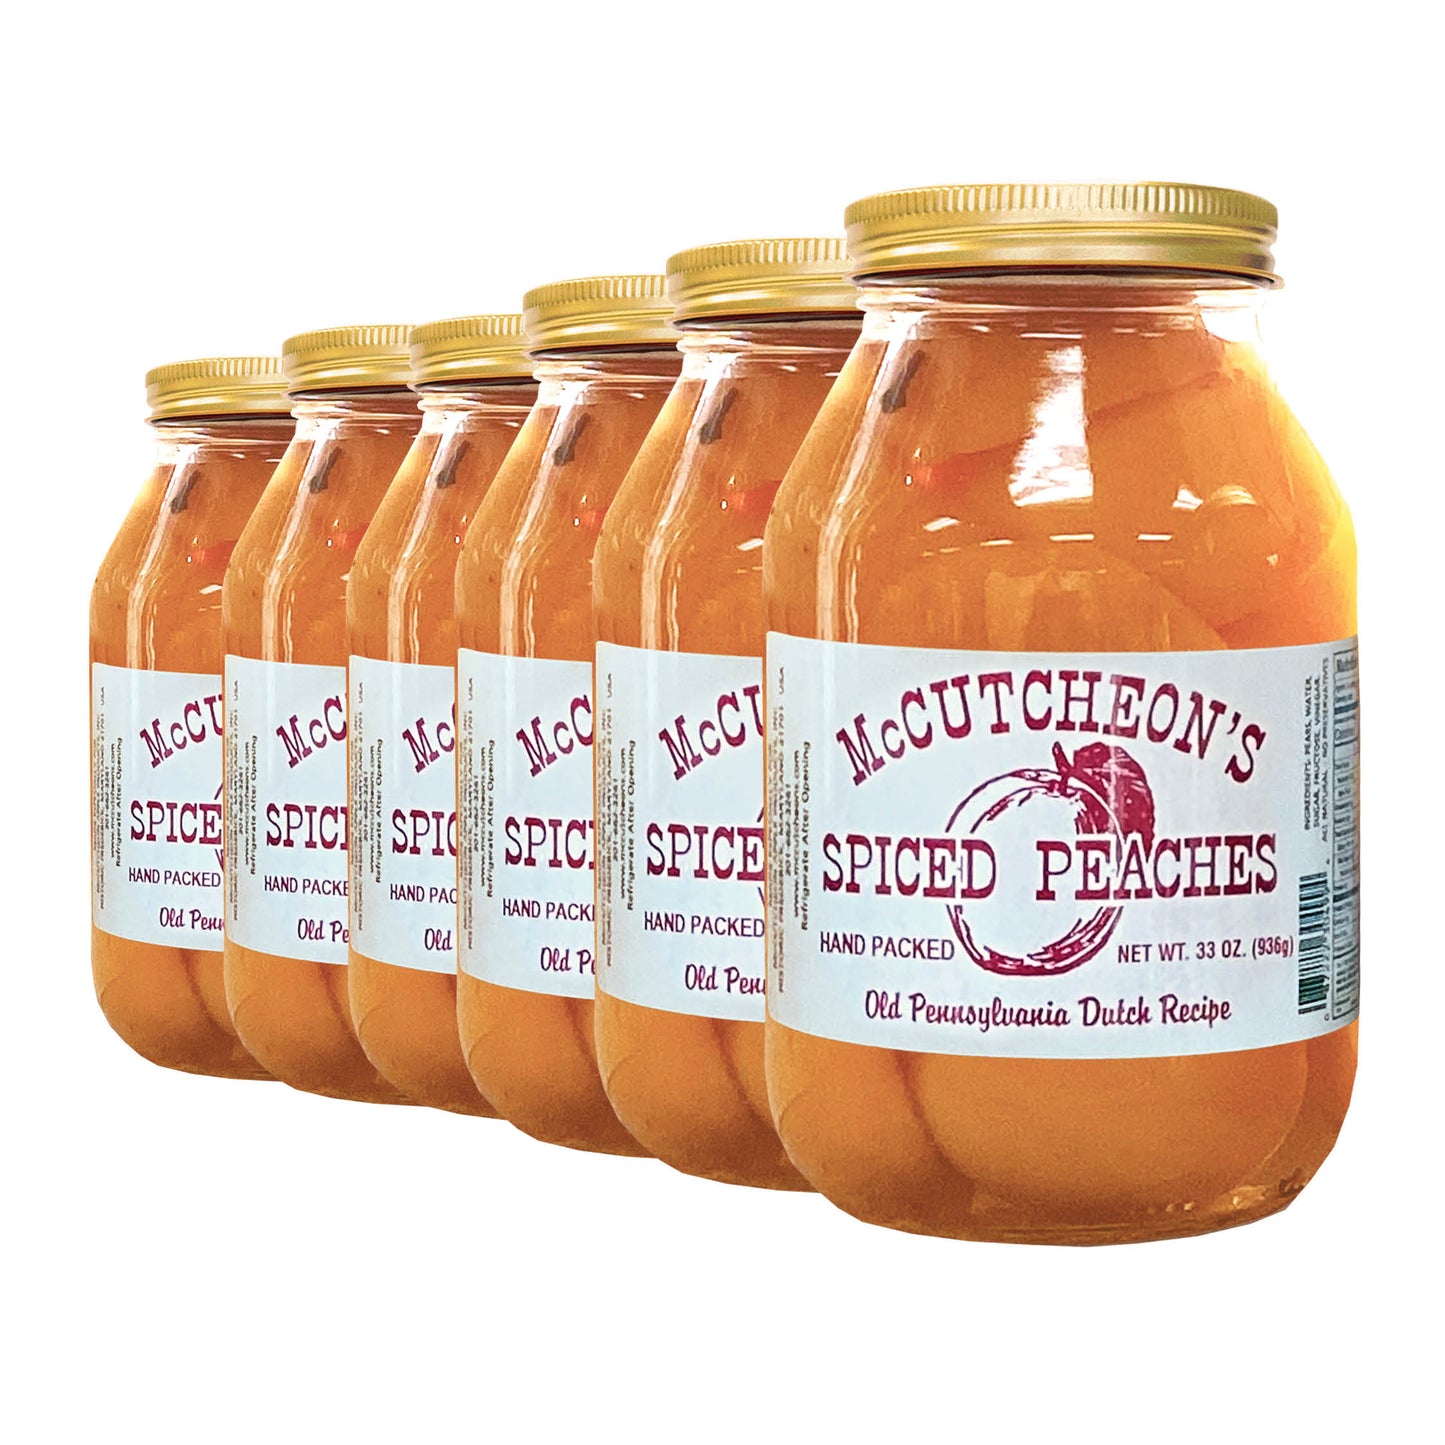 6 quart jars bundle of McCutcheon's spiced peaches